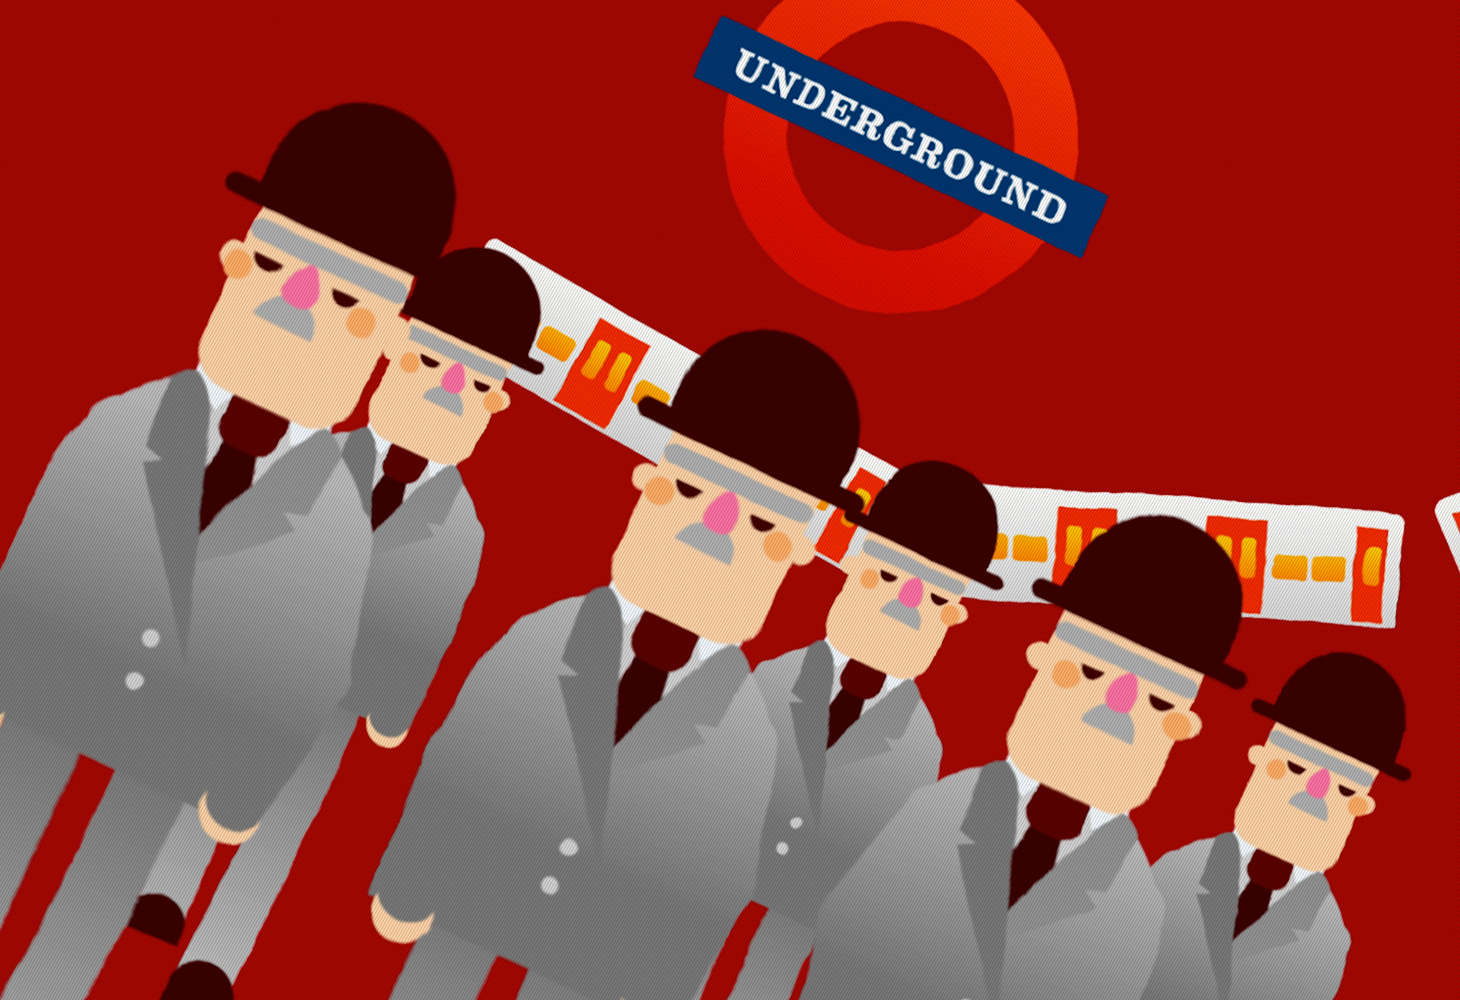 LDN - Character Illustrations - London Underground